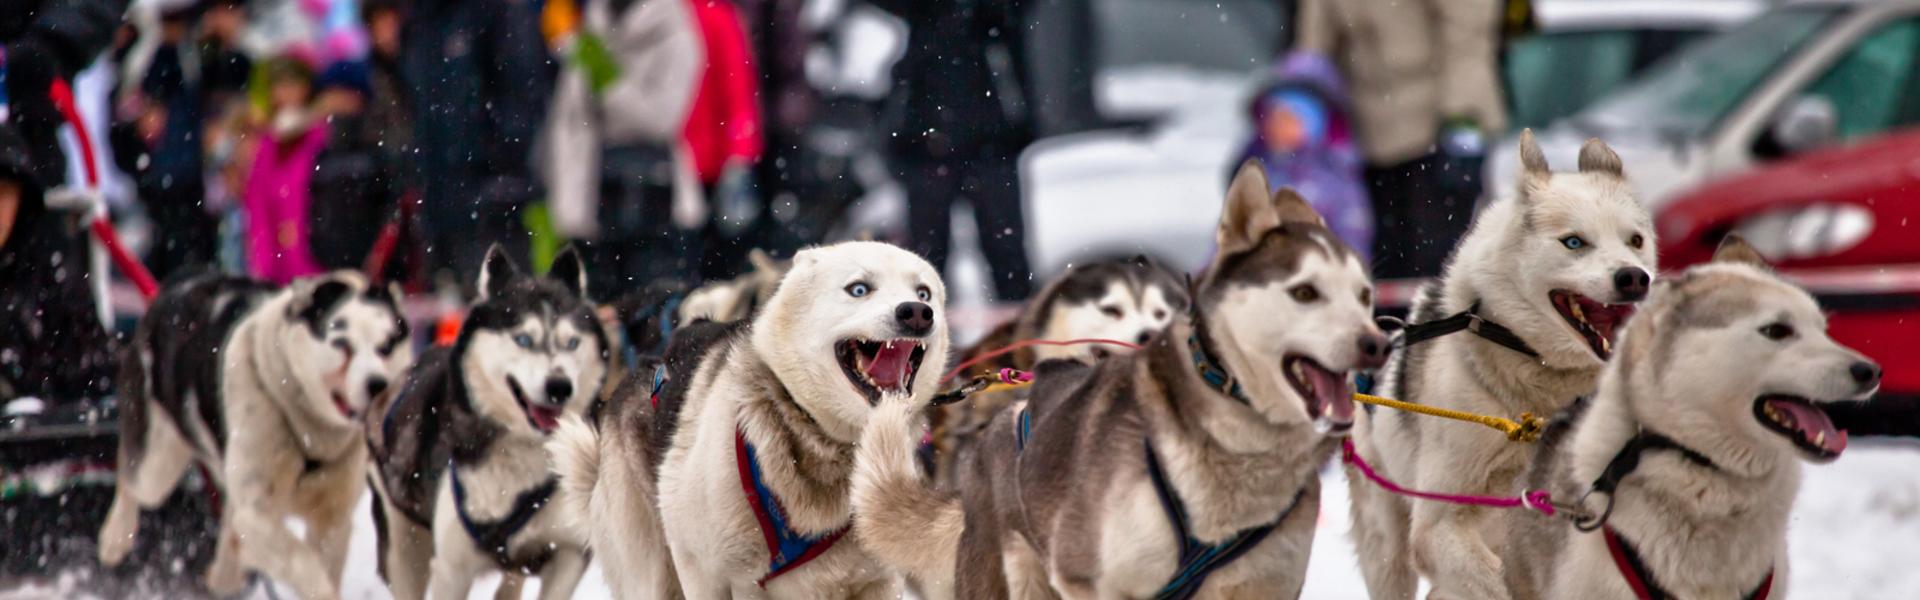 Imagen: Małopolska zimą. Psie zaprzęgi – rekreacja dla miłośników ruchu i zwierząt